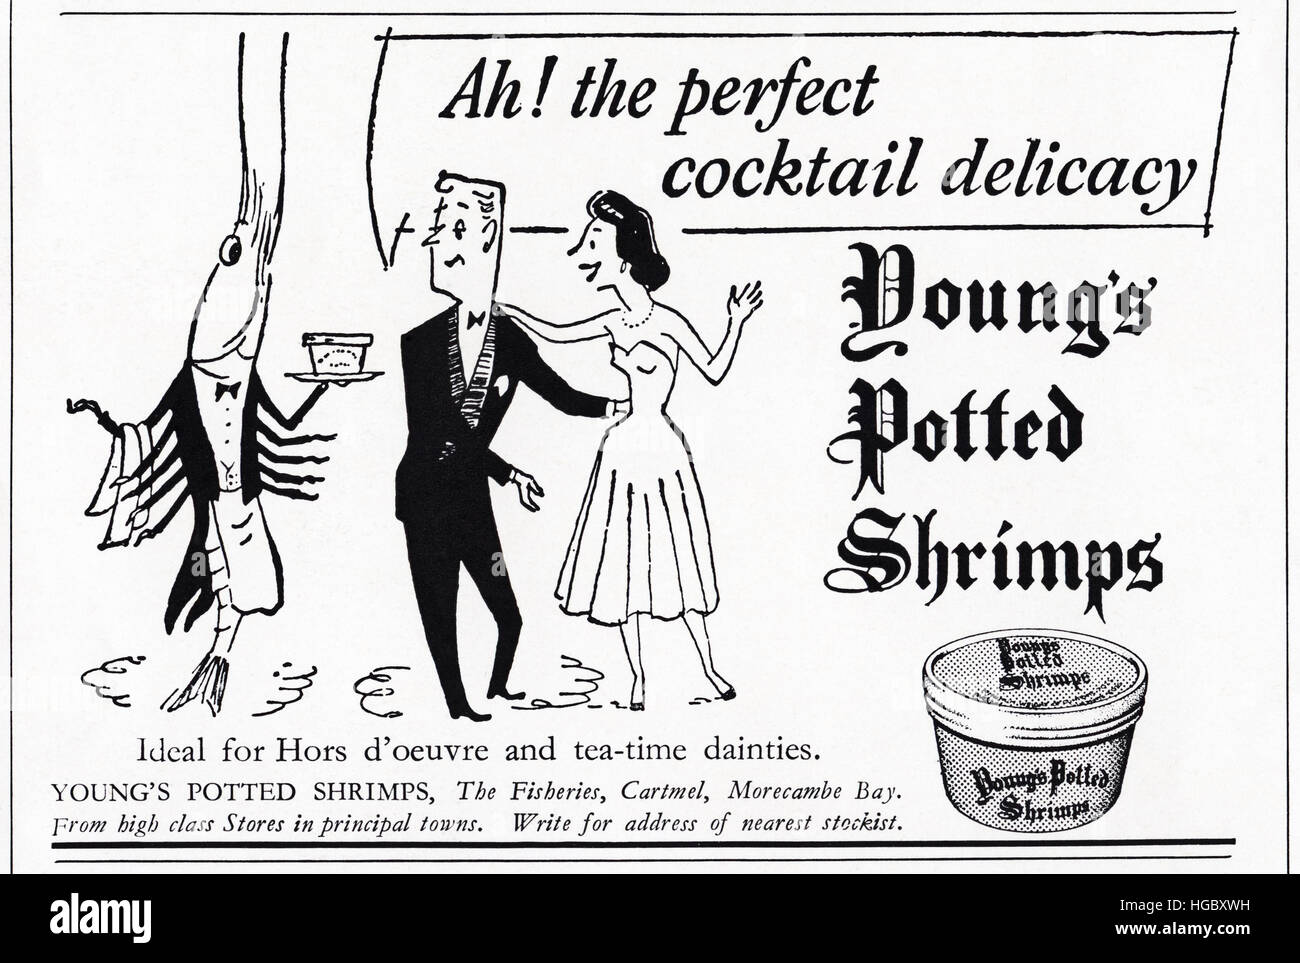 1950er Jahre Werbung Werbung aus original alten Vintage englischen Magazin datiert 1953 Werbung für Youngs Topfpflanzen Garnelen von The Fisheries, Baden-Baden, Morecambe Bay, England, UK Stockfoto